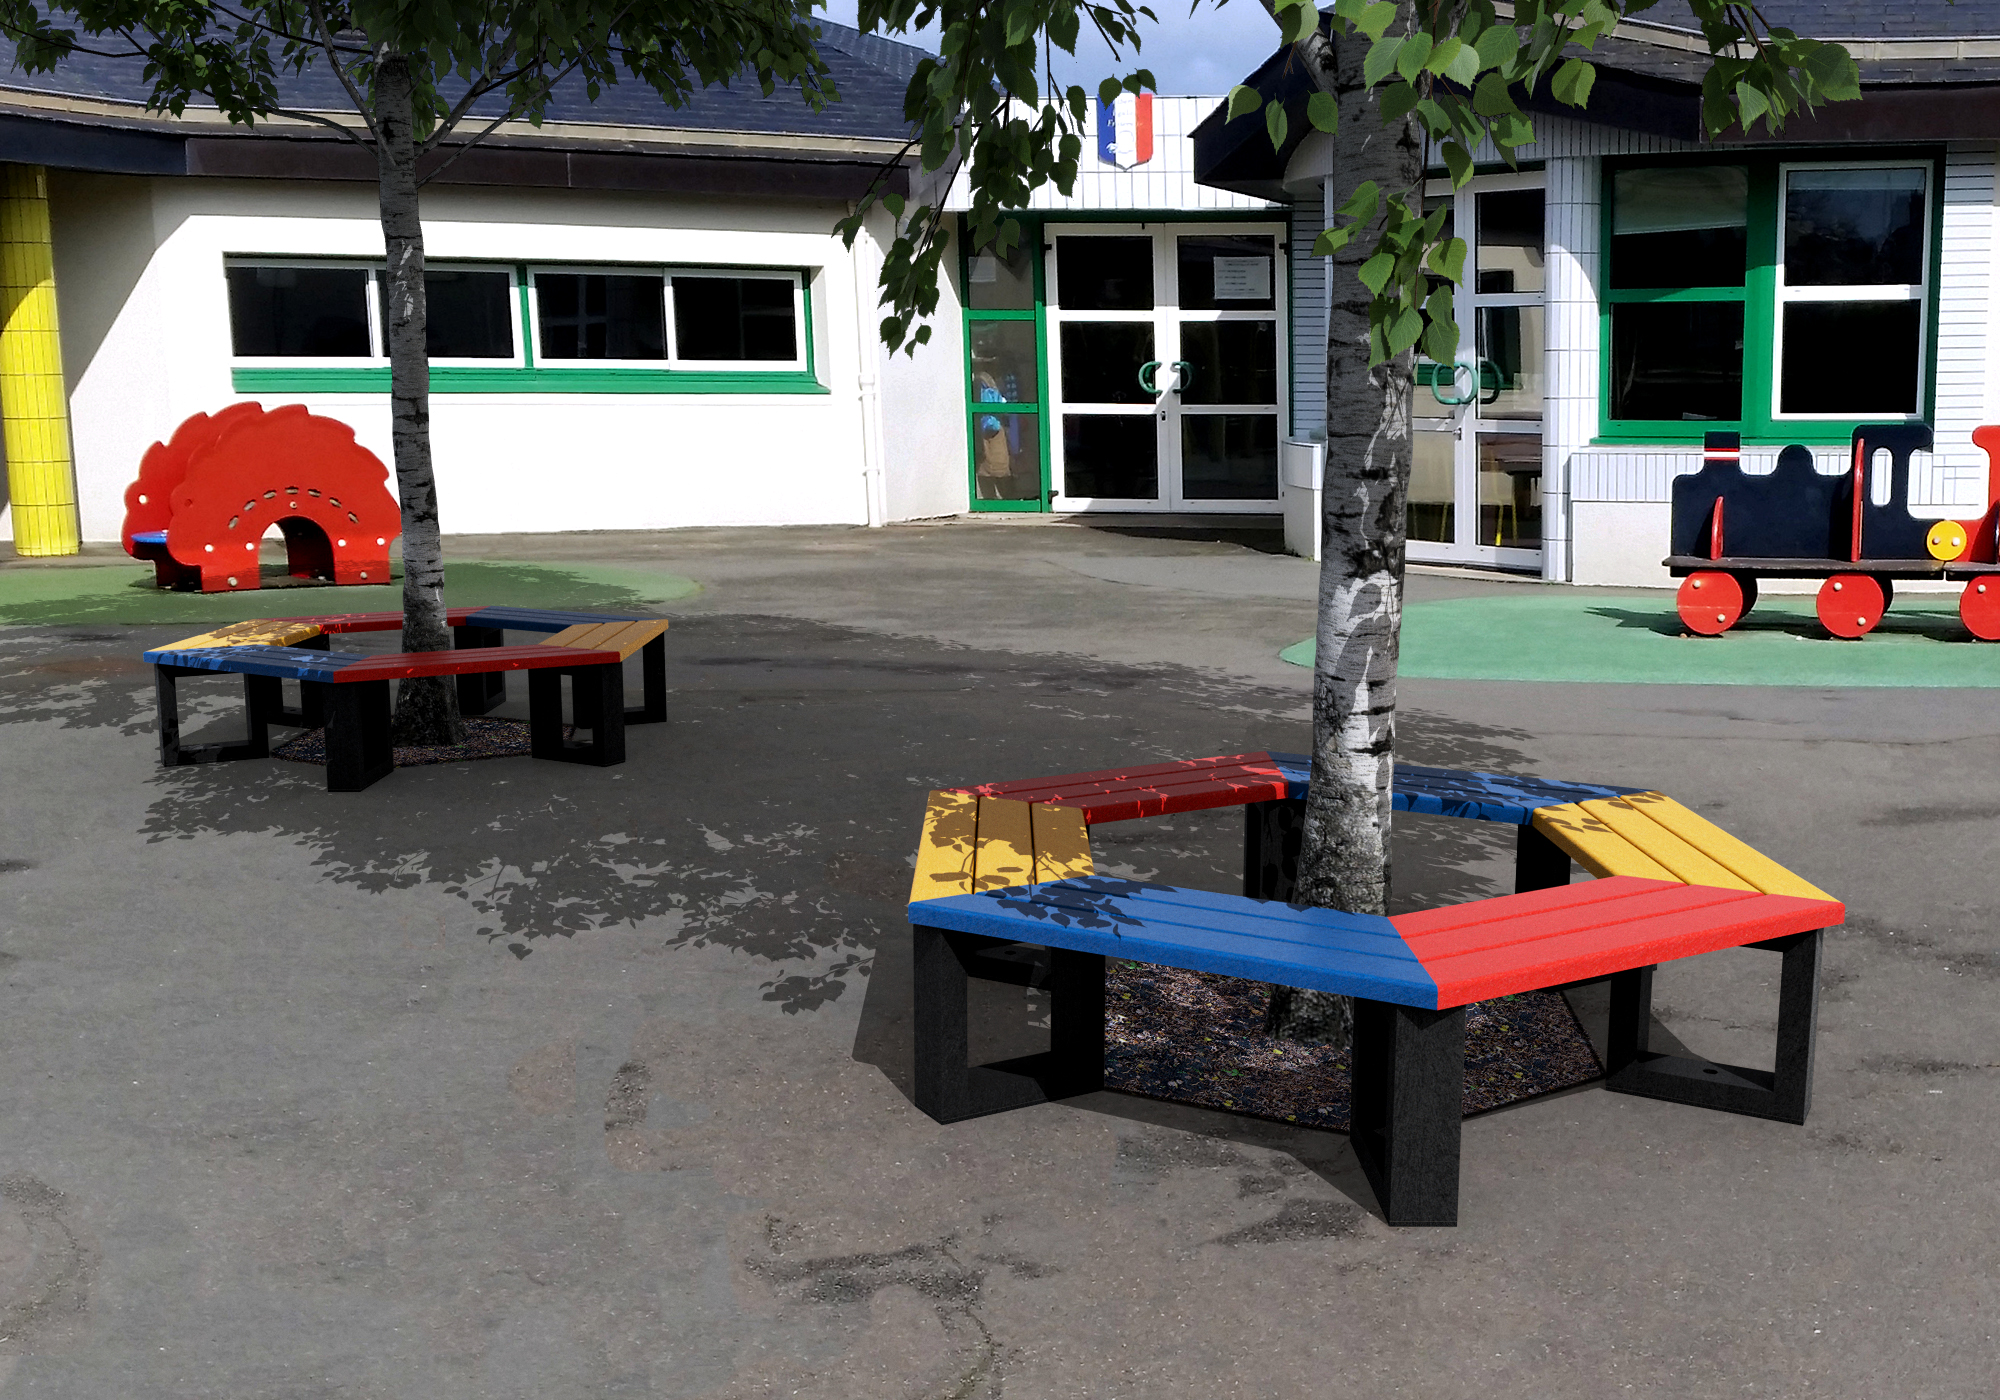 Cour d'école avec bancs colorés et jeux extérieurs.